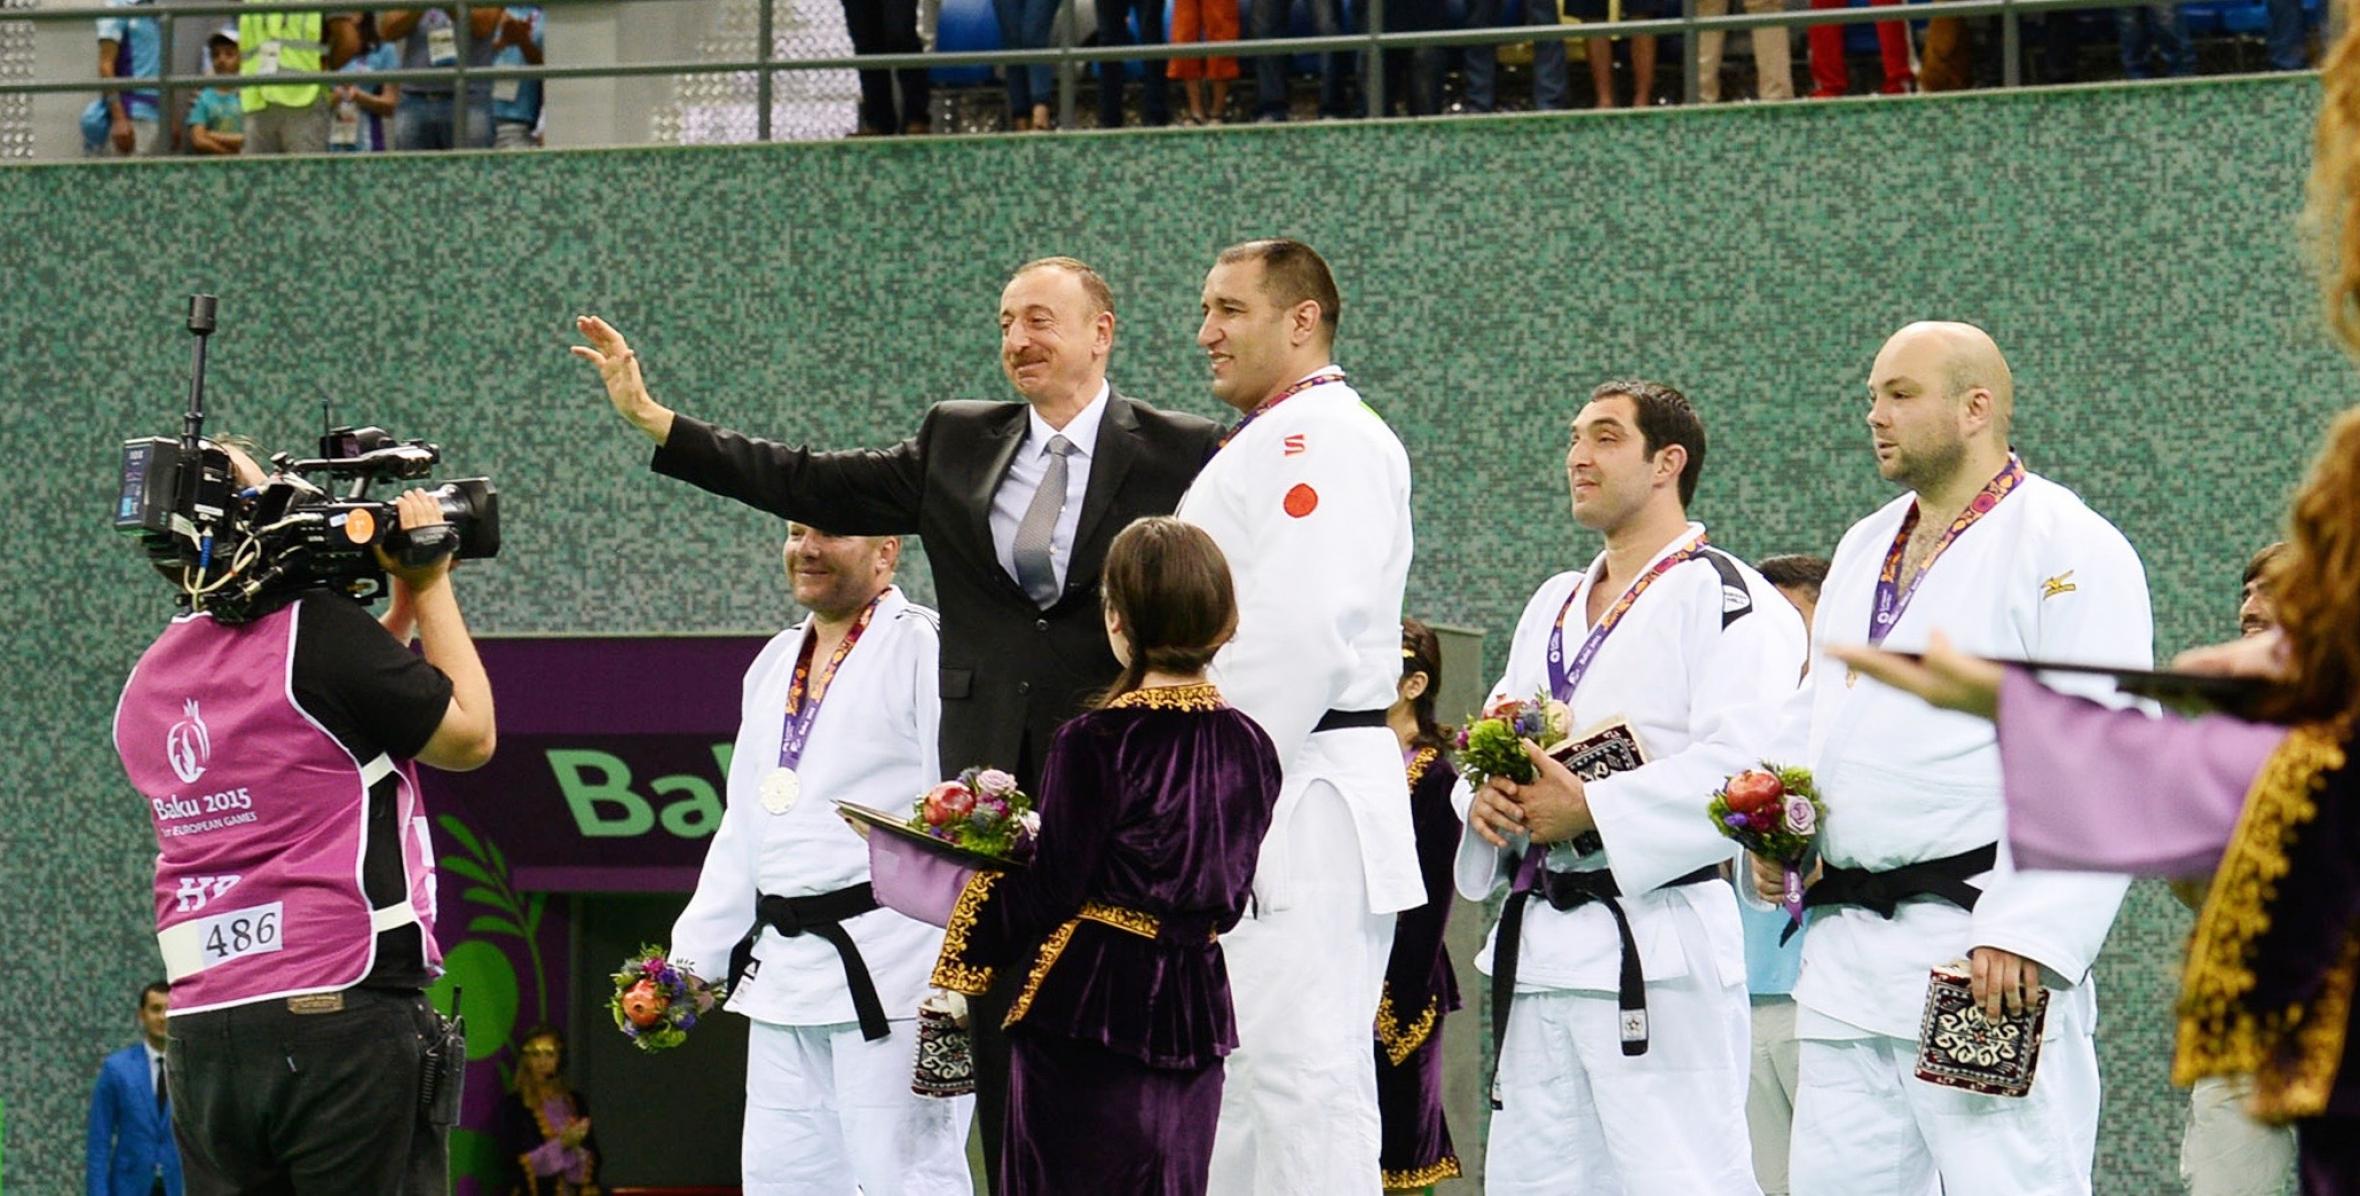 Ilham Aliyev presented gold medal to Ilham Zakiyev